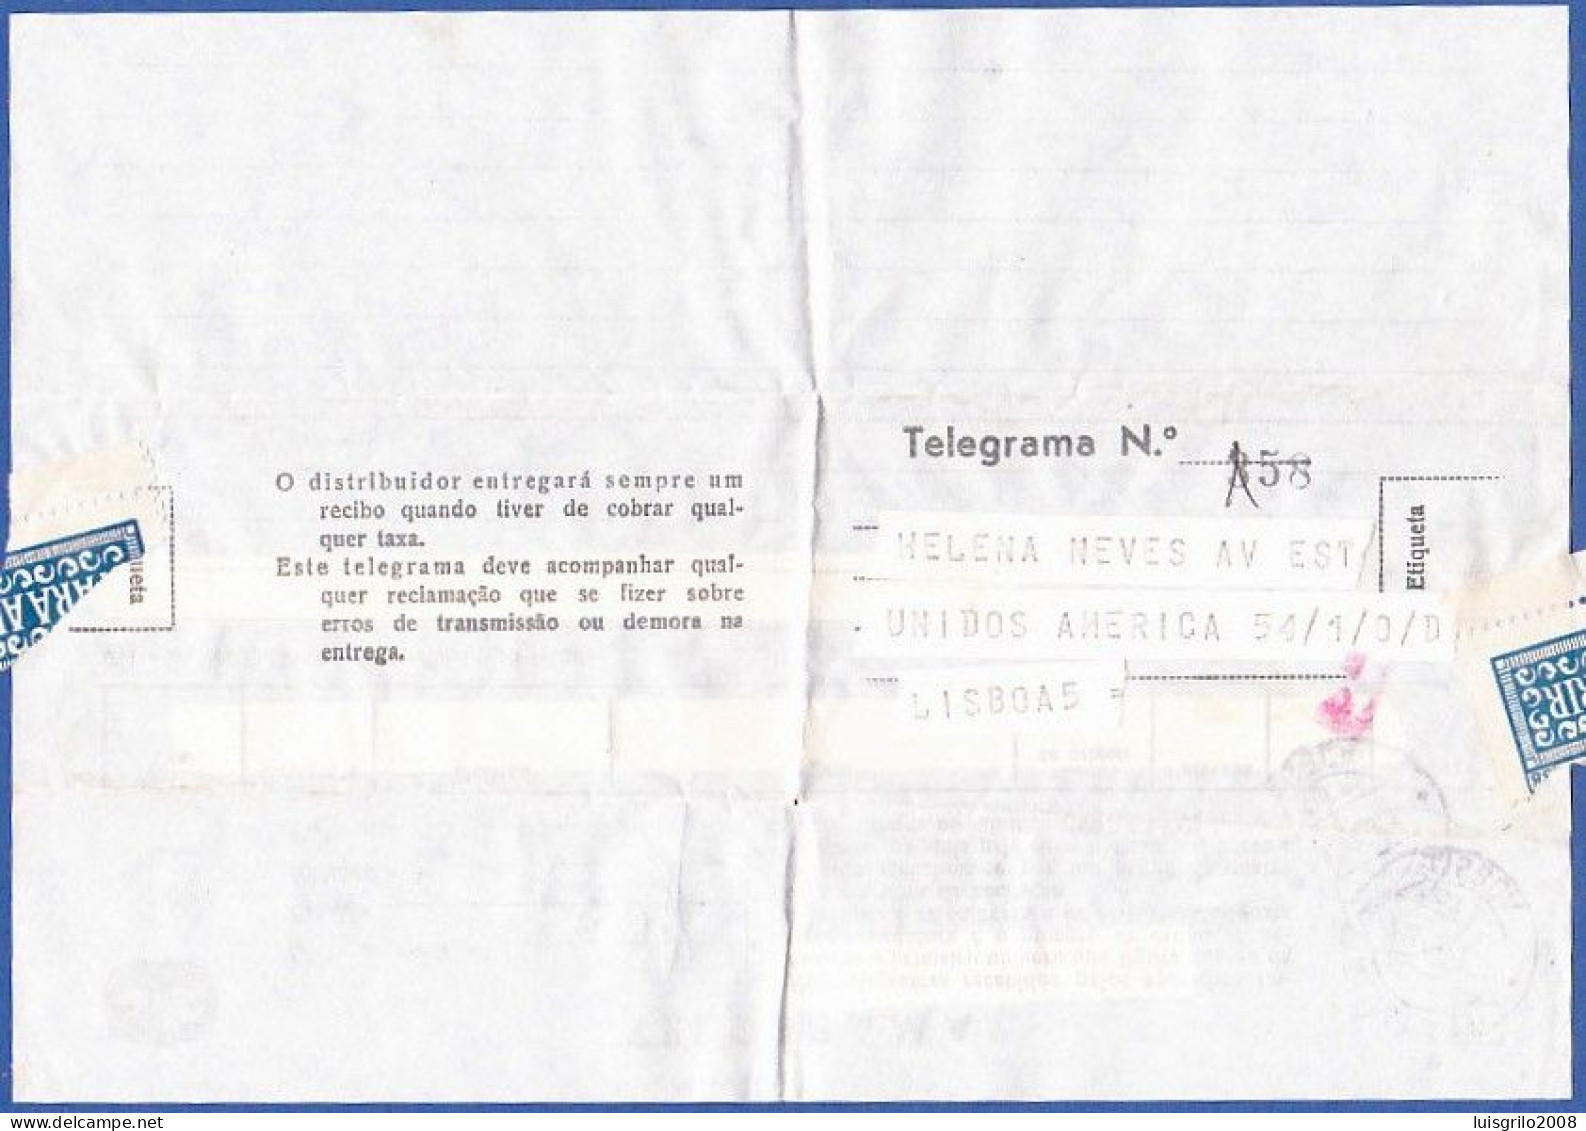 Telegram/ Telegrama - Reguengo Do Fetal, Leiria > Lisboa -|- Postmark - Alvalade. Lisboa. 1971 - Briefe U. Dokumente